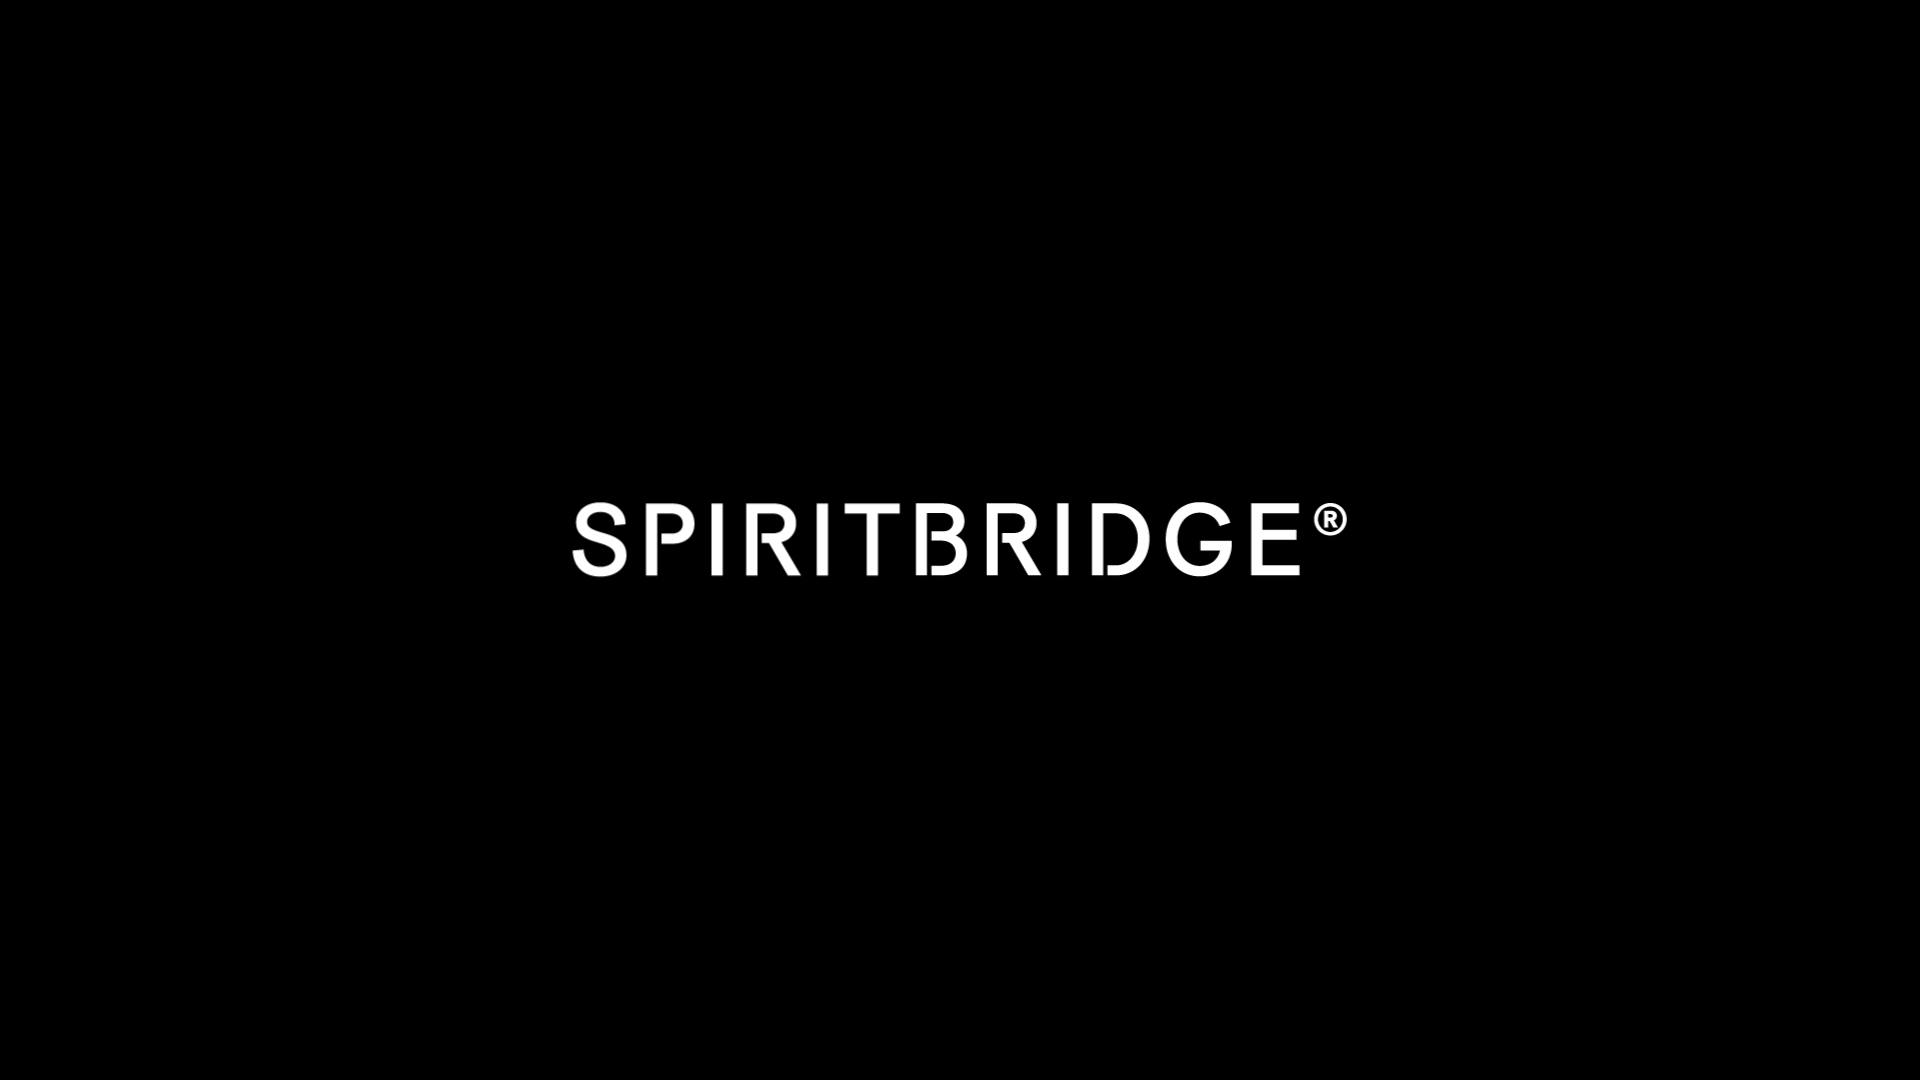 Spiritbridge